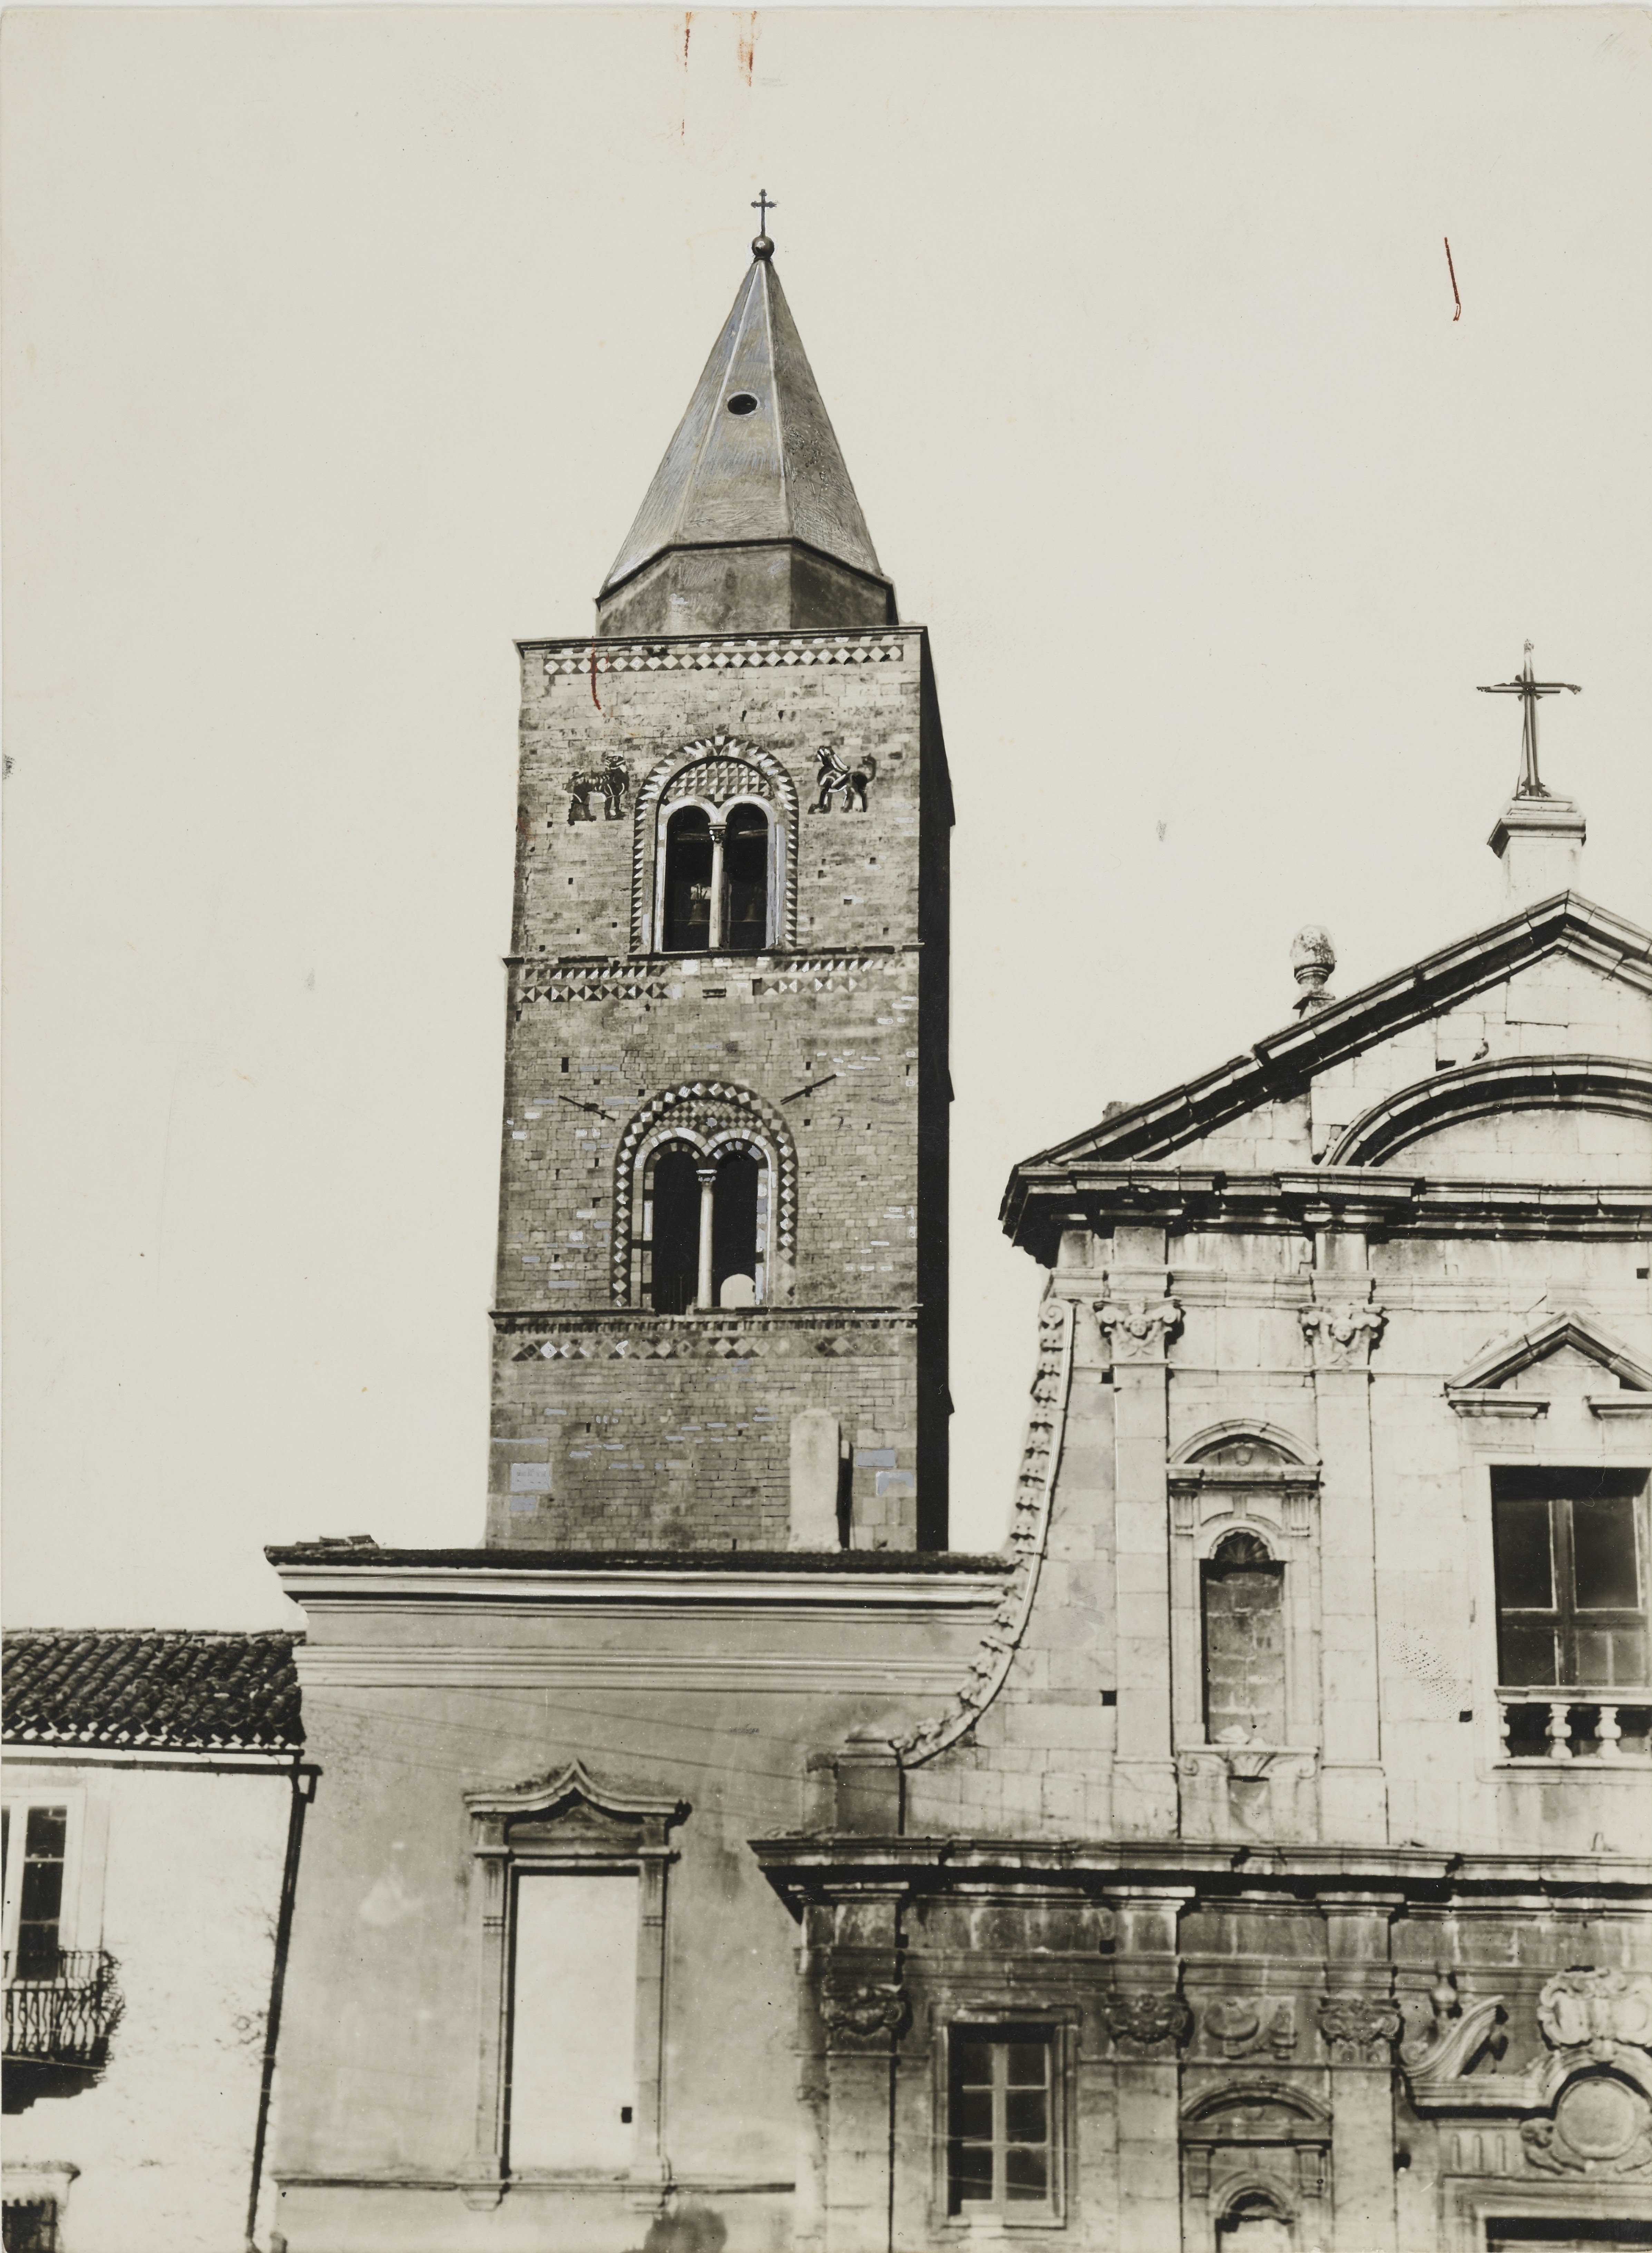 Fotografo non identificato, Melfi - Cattedrale di S. Maria Assunta, facciata, campanile, particolare, 1926-1950, gelatina ai sali d'argento, MPI6061785